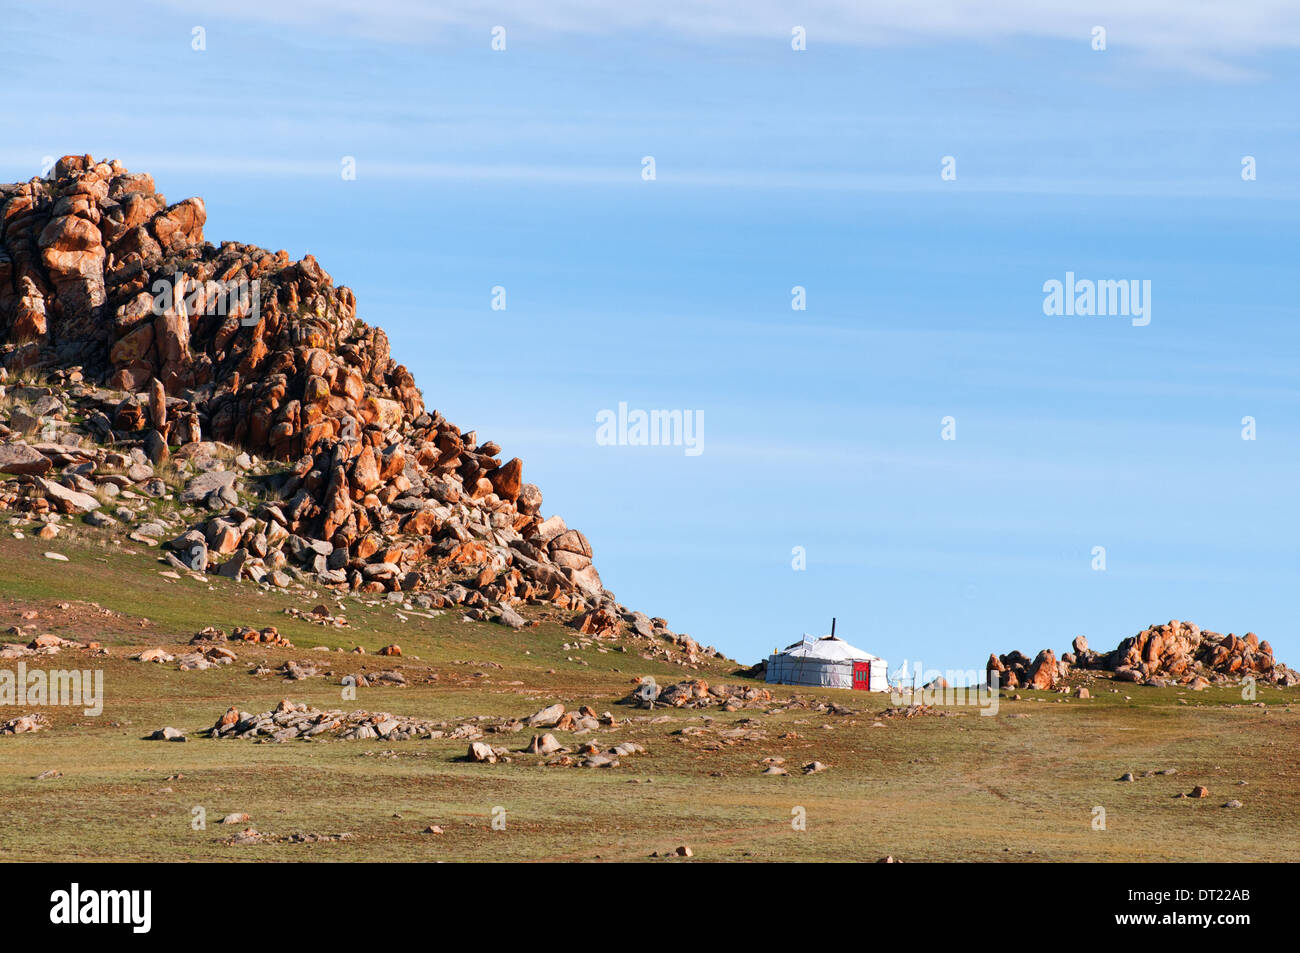 Nomade mongol accueil dans des montagnes du désert Banque D'Images